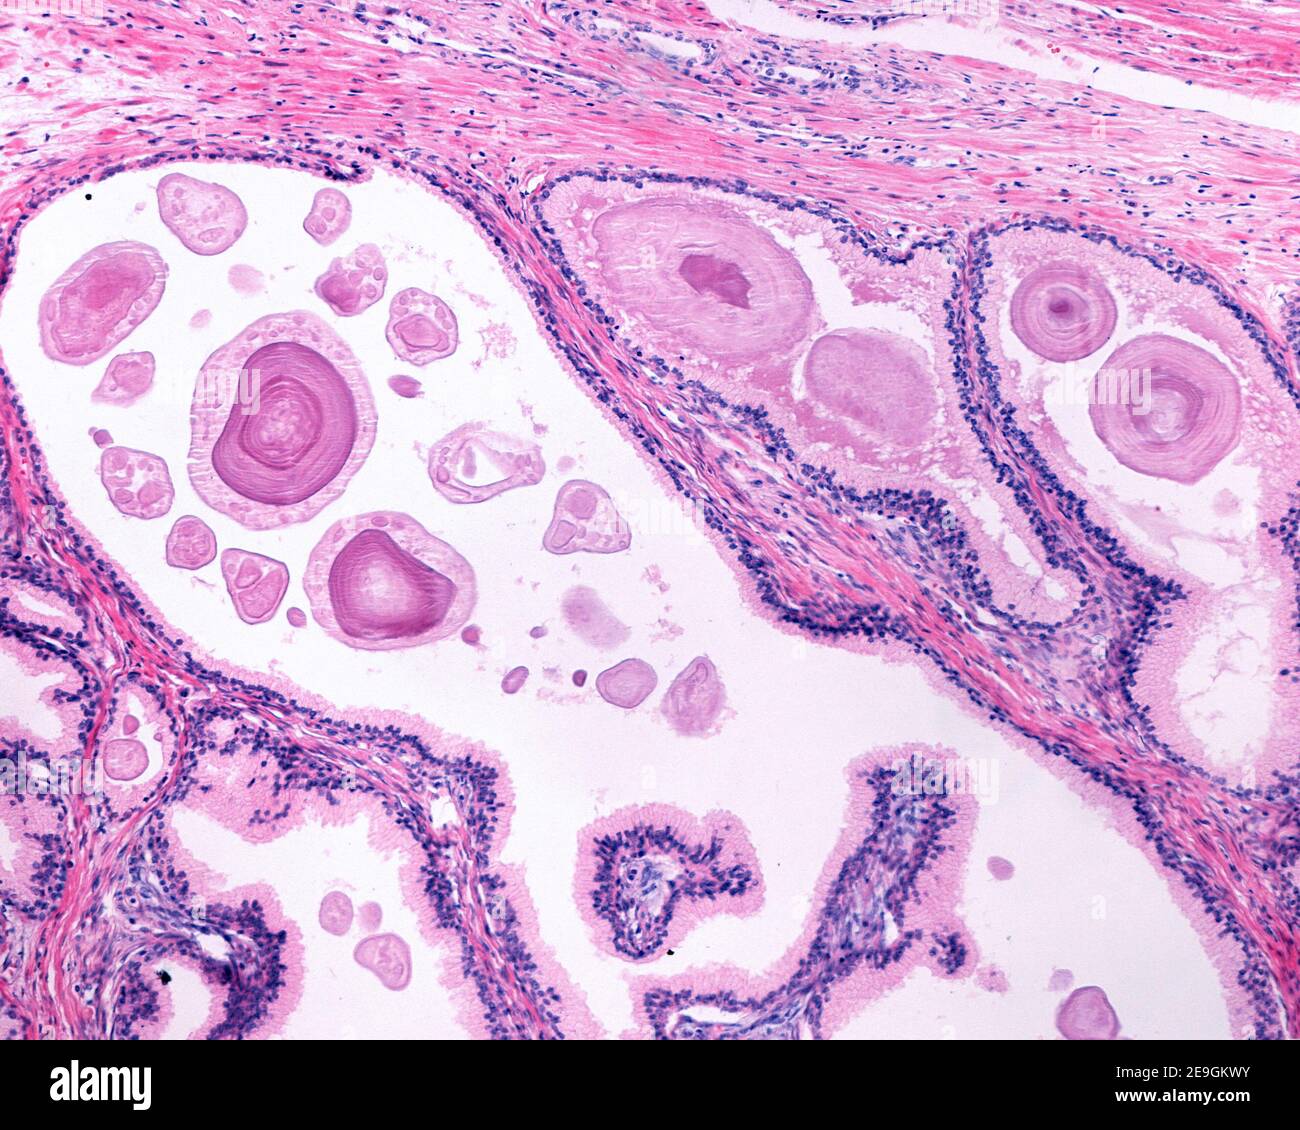 Corpora amylacea (concrétions prostatiques) situé dans la lumière des glandes de la prostate humaine chez un homme plus âgé. Elles apparaissent sous forme de grande structure ronde ou ovale Banque D'Images